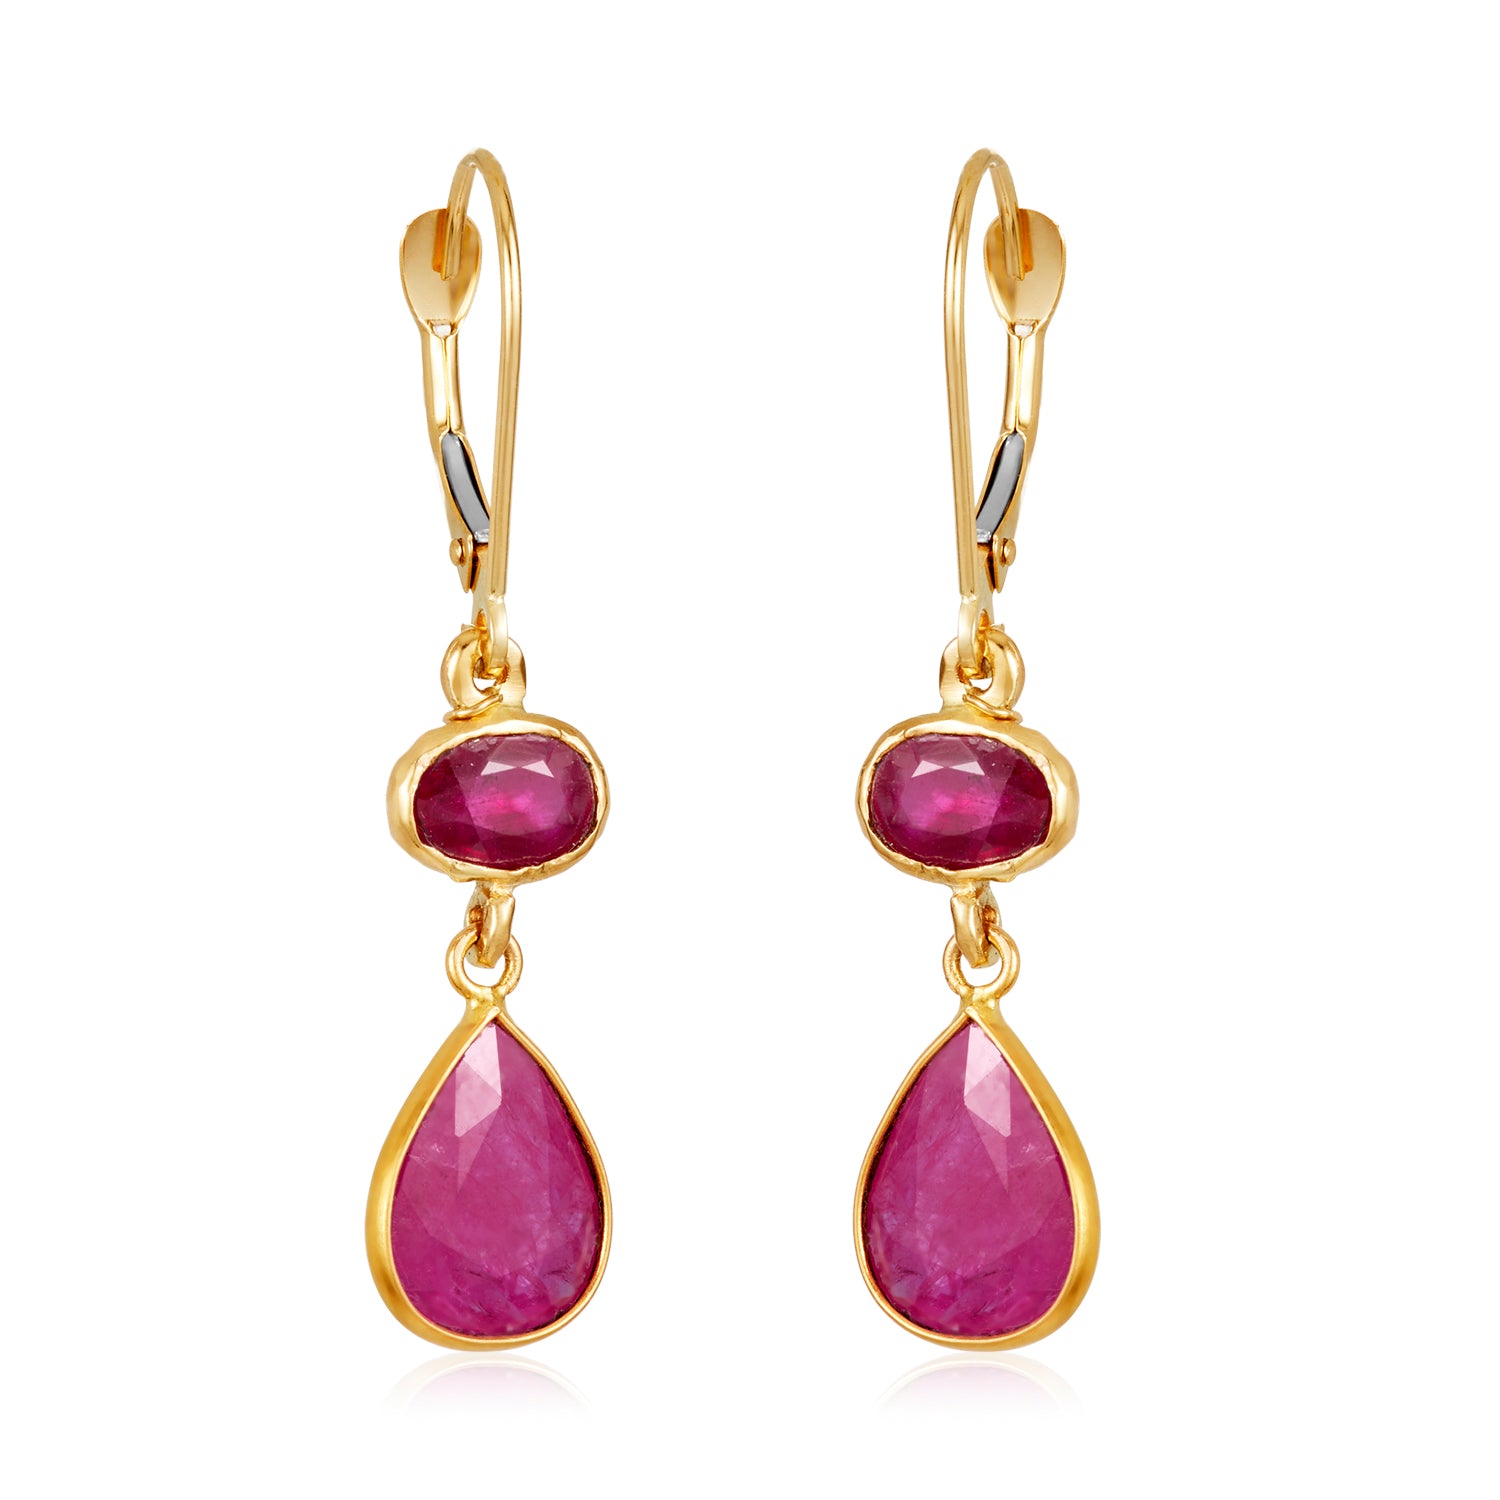 Double Drop Ruby Earrings in 14k